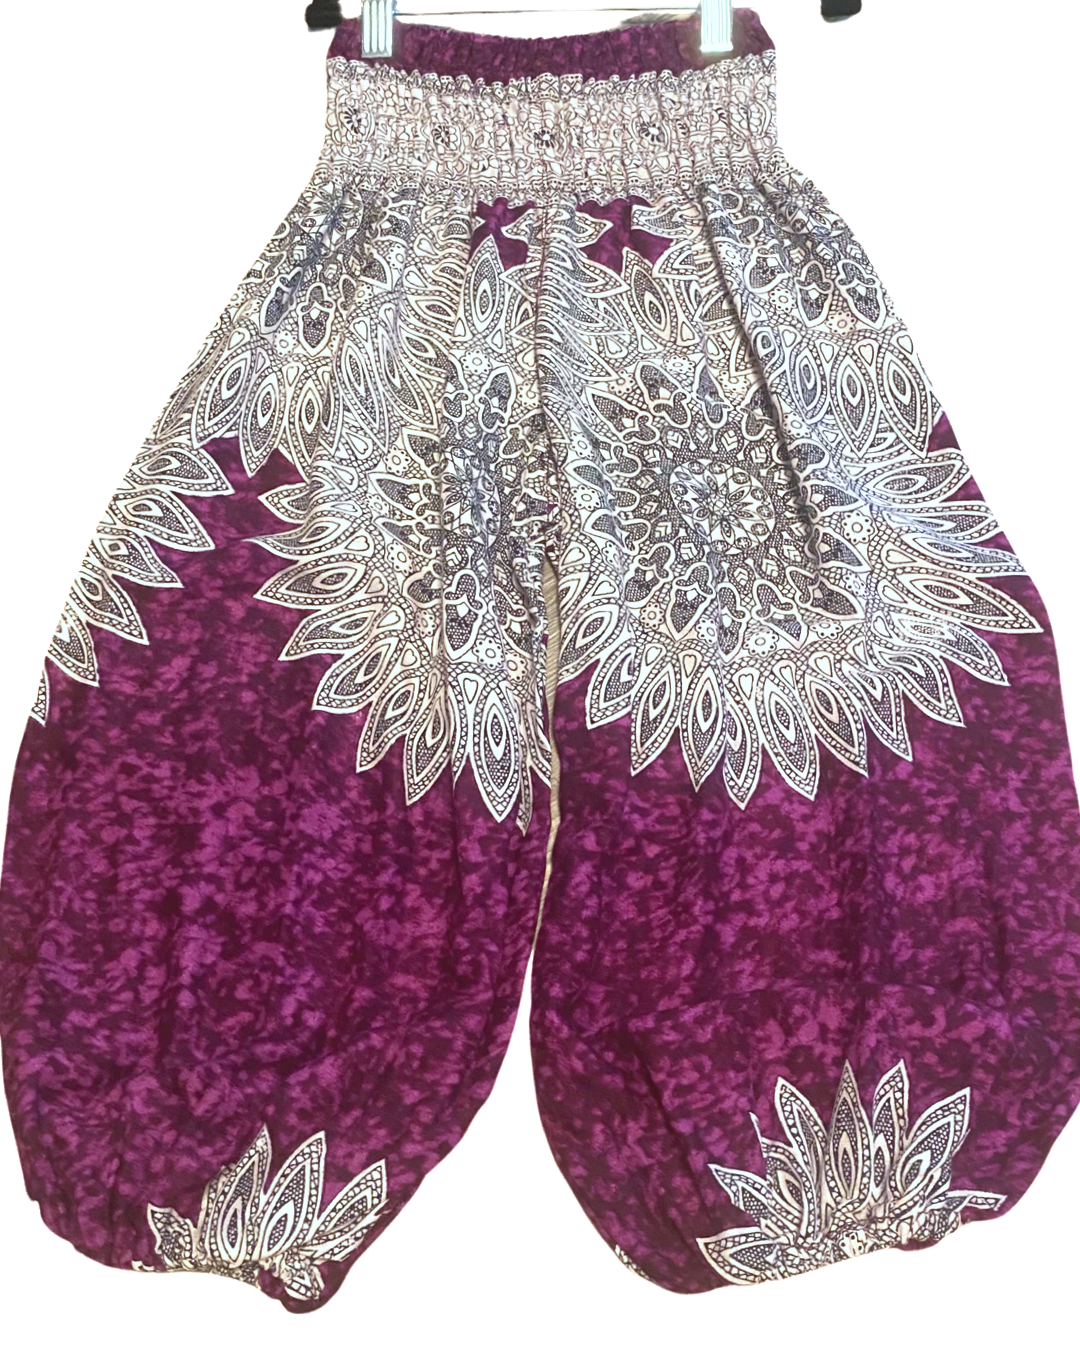 Youth Harem Pants w/ White Mandala Print